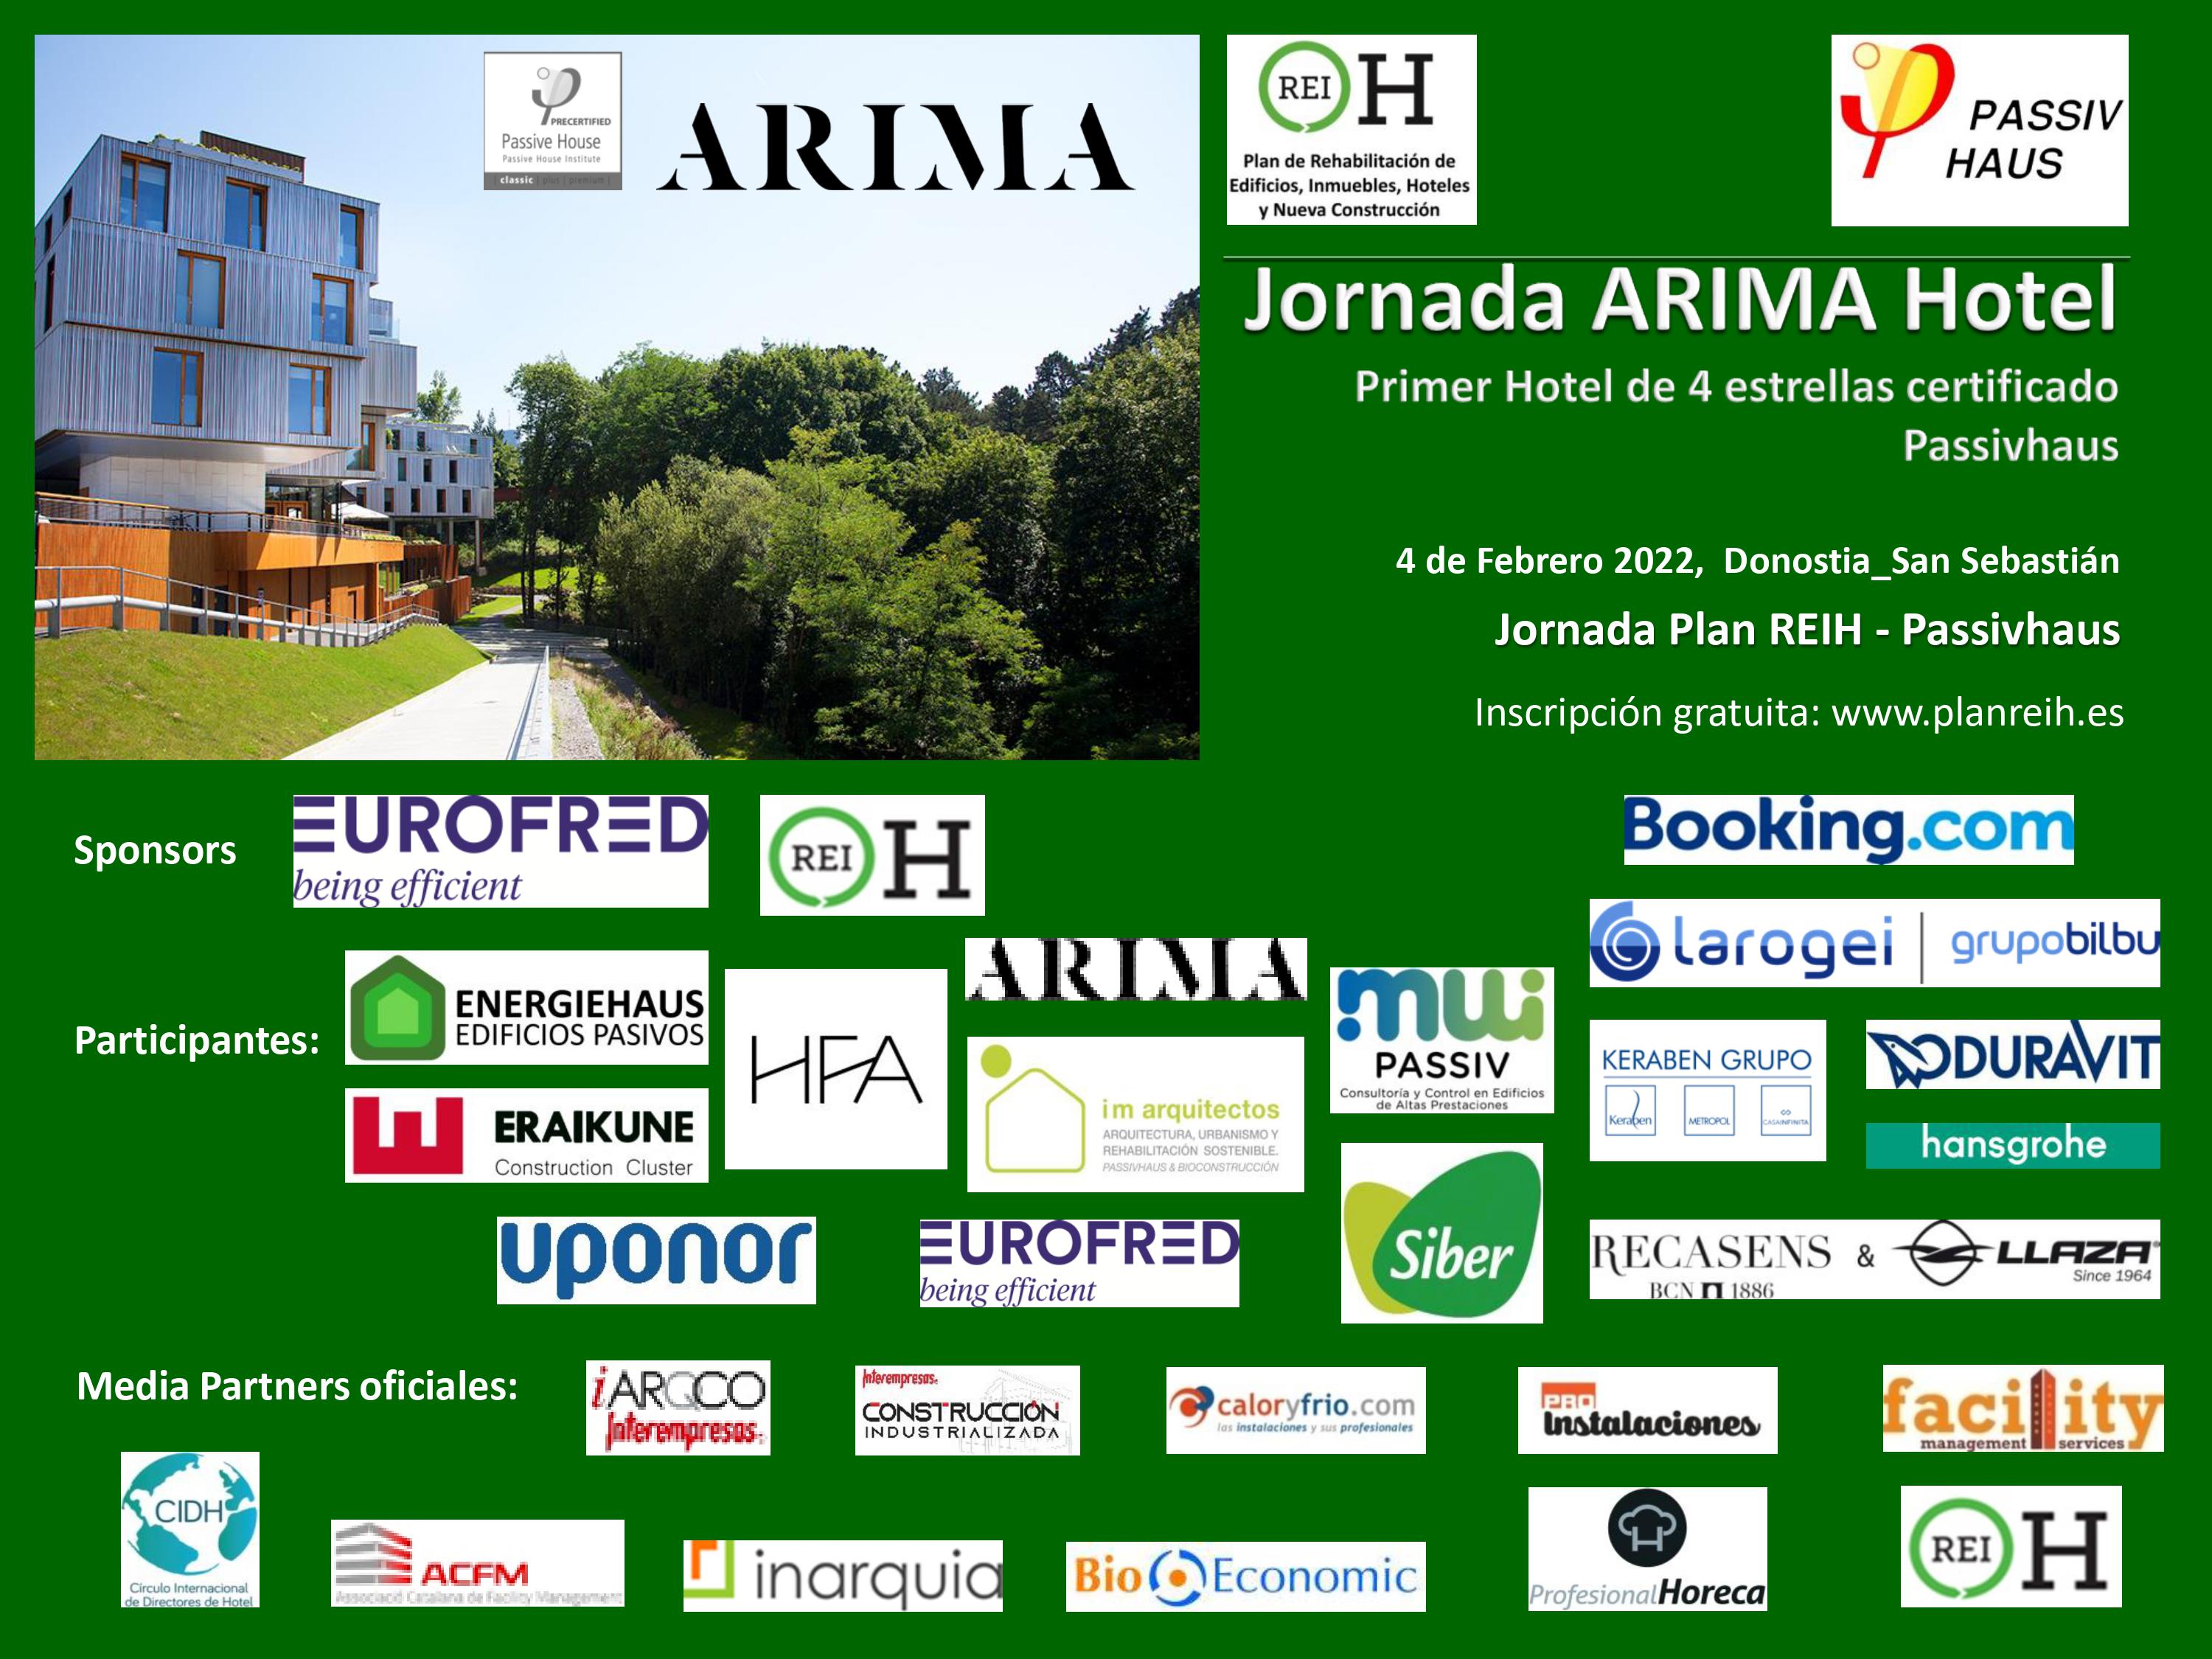 Jornada ARIMA Hotel - Passivhaus